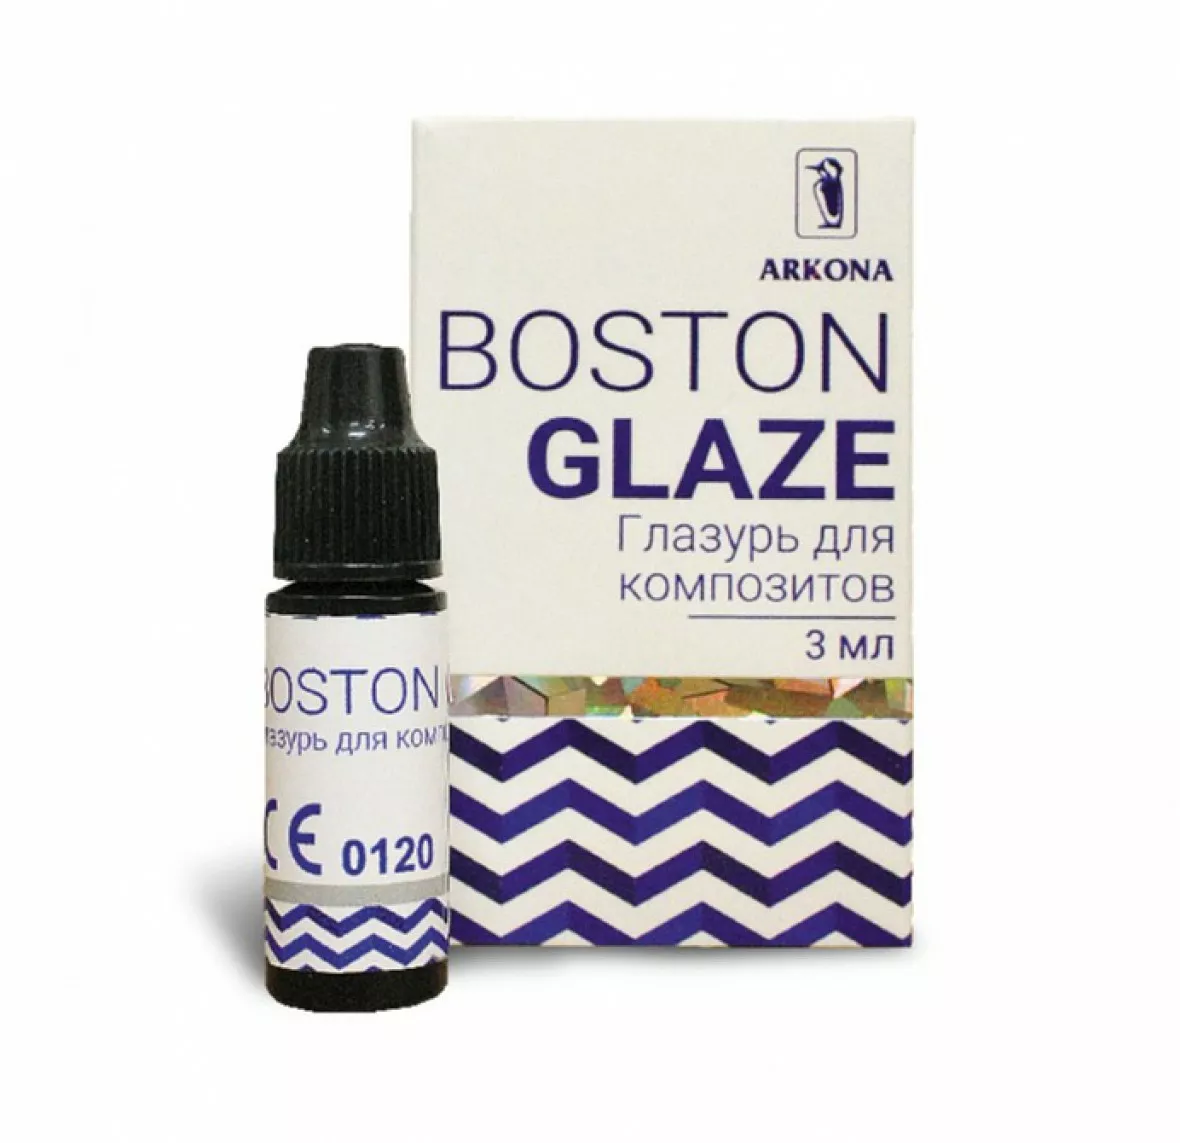 BOSTON GLAZE-светоотверждаемая стоматологическая глазурь